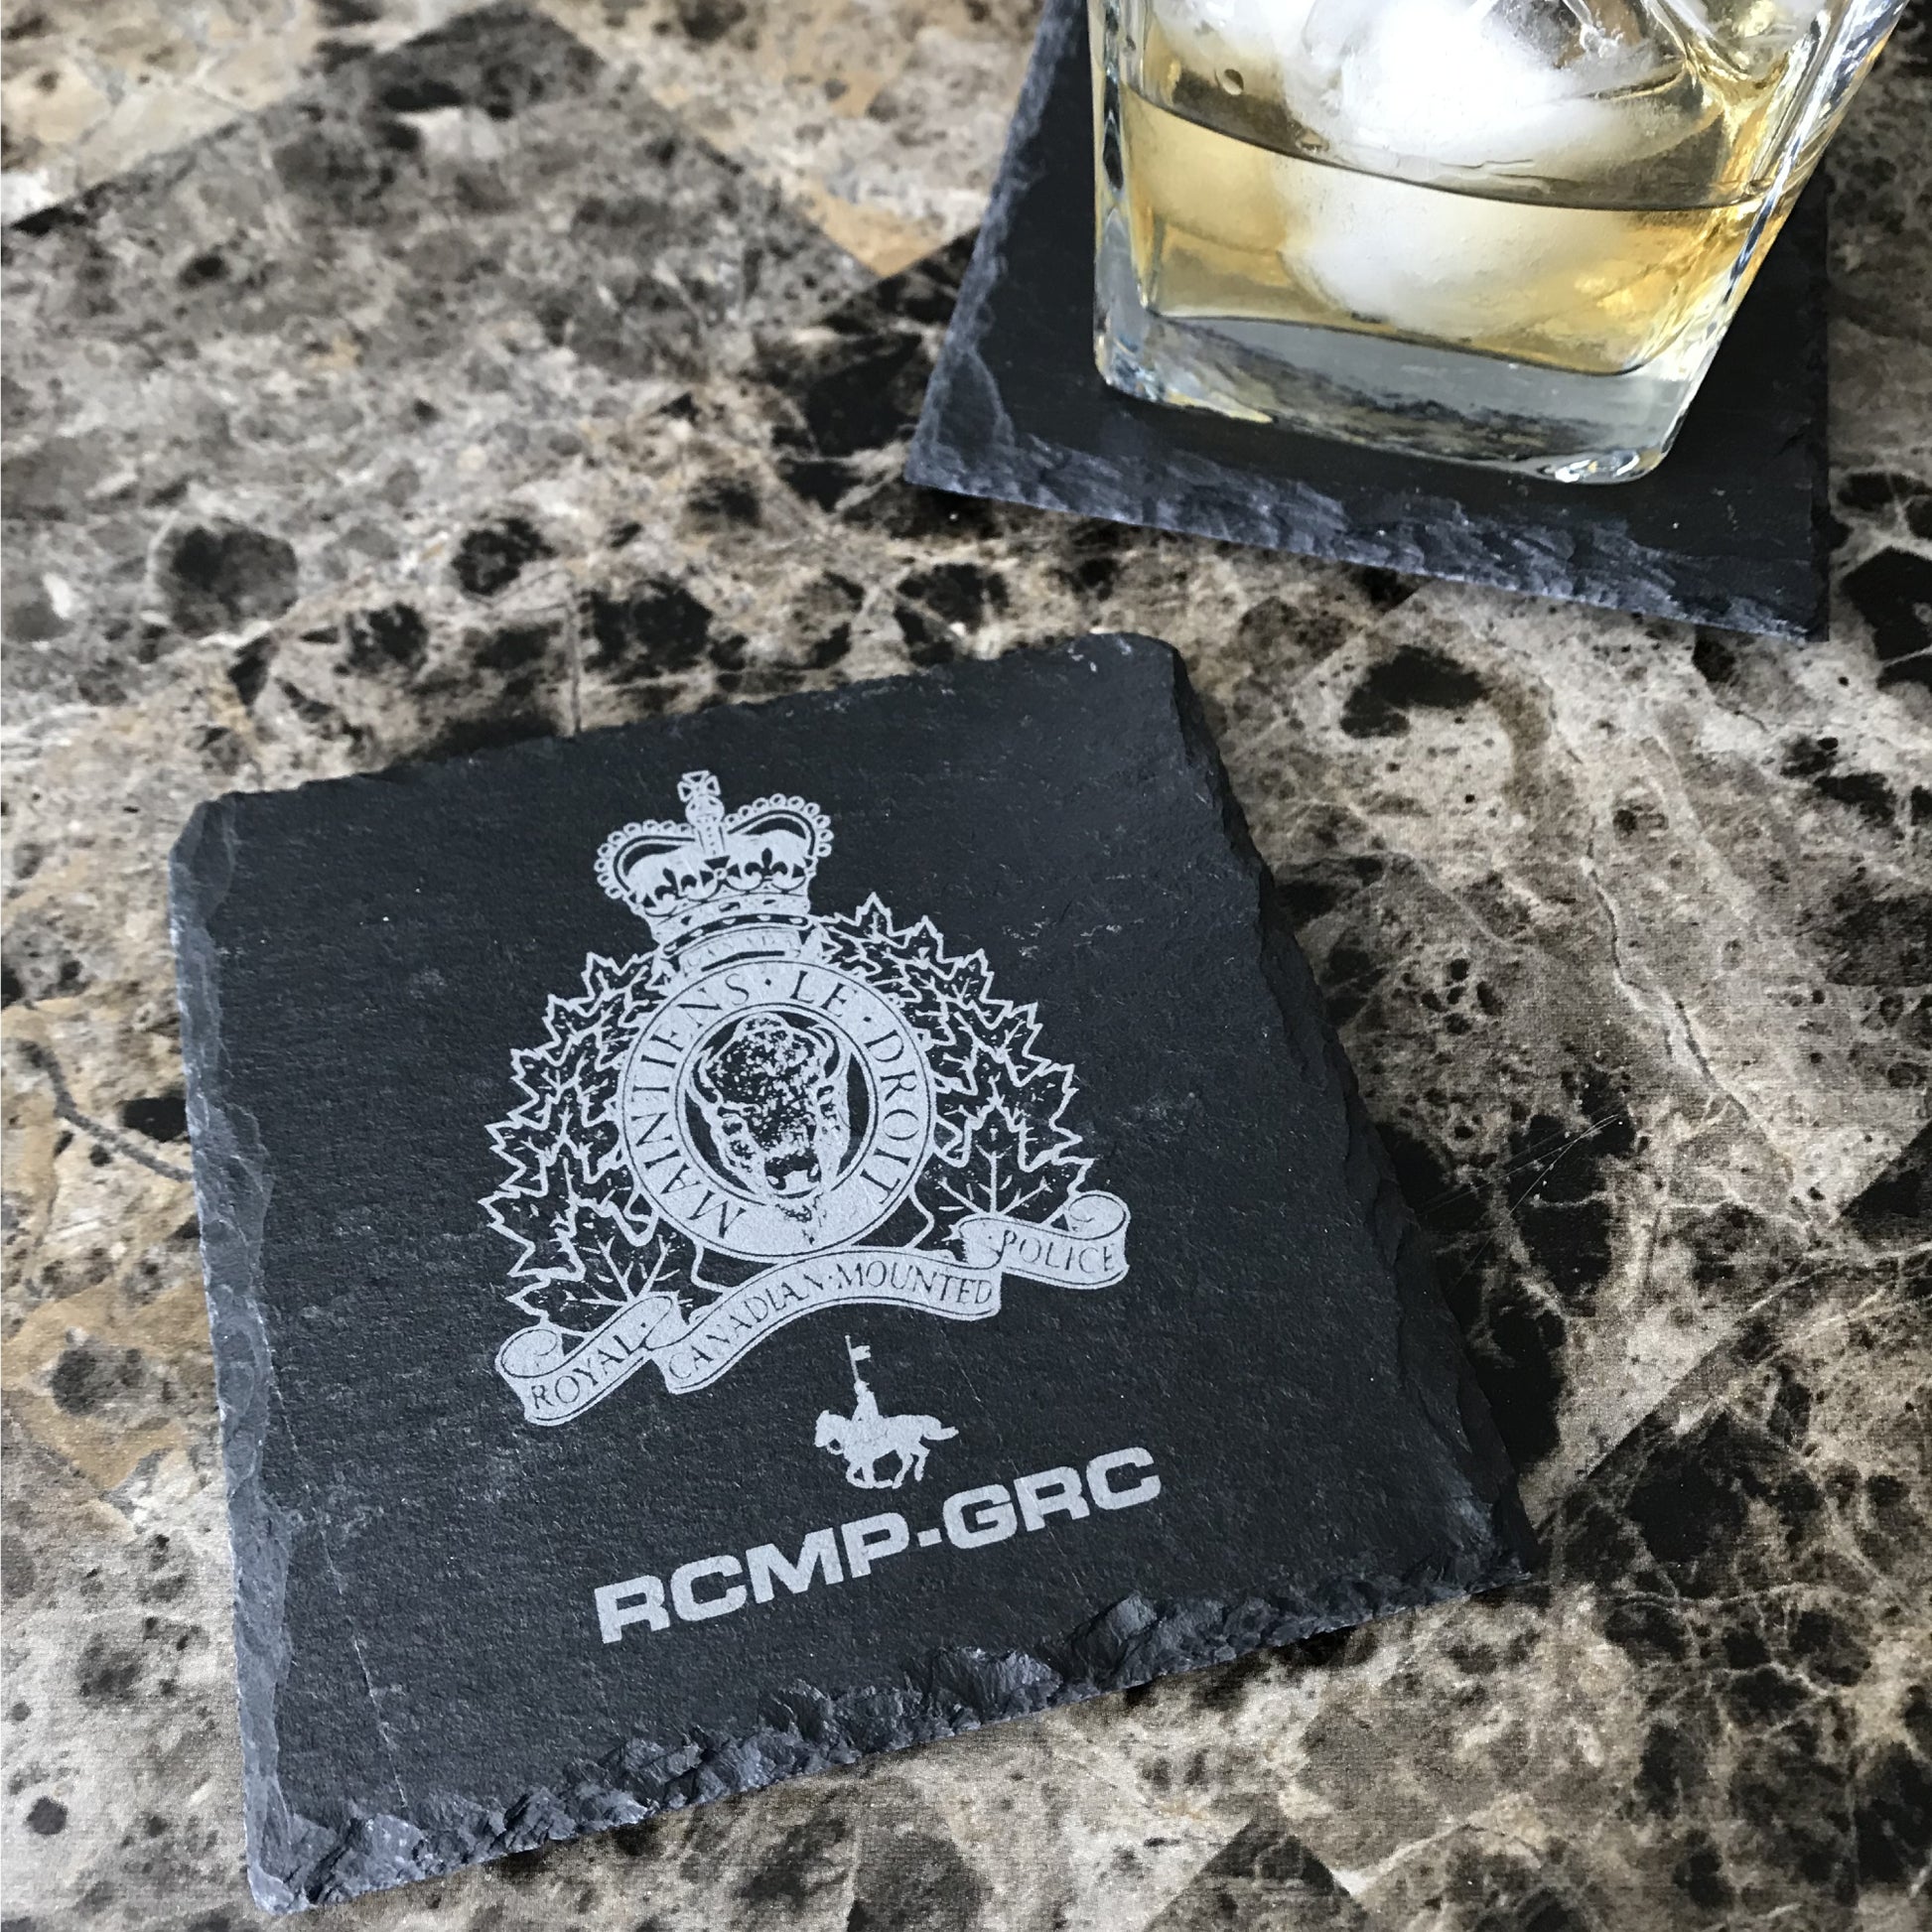 Edmonton Police Stone Slate Coasters-911 Duty Gear-911 Duty Gear Canada